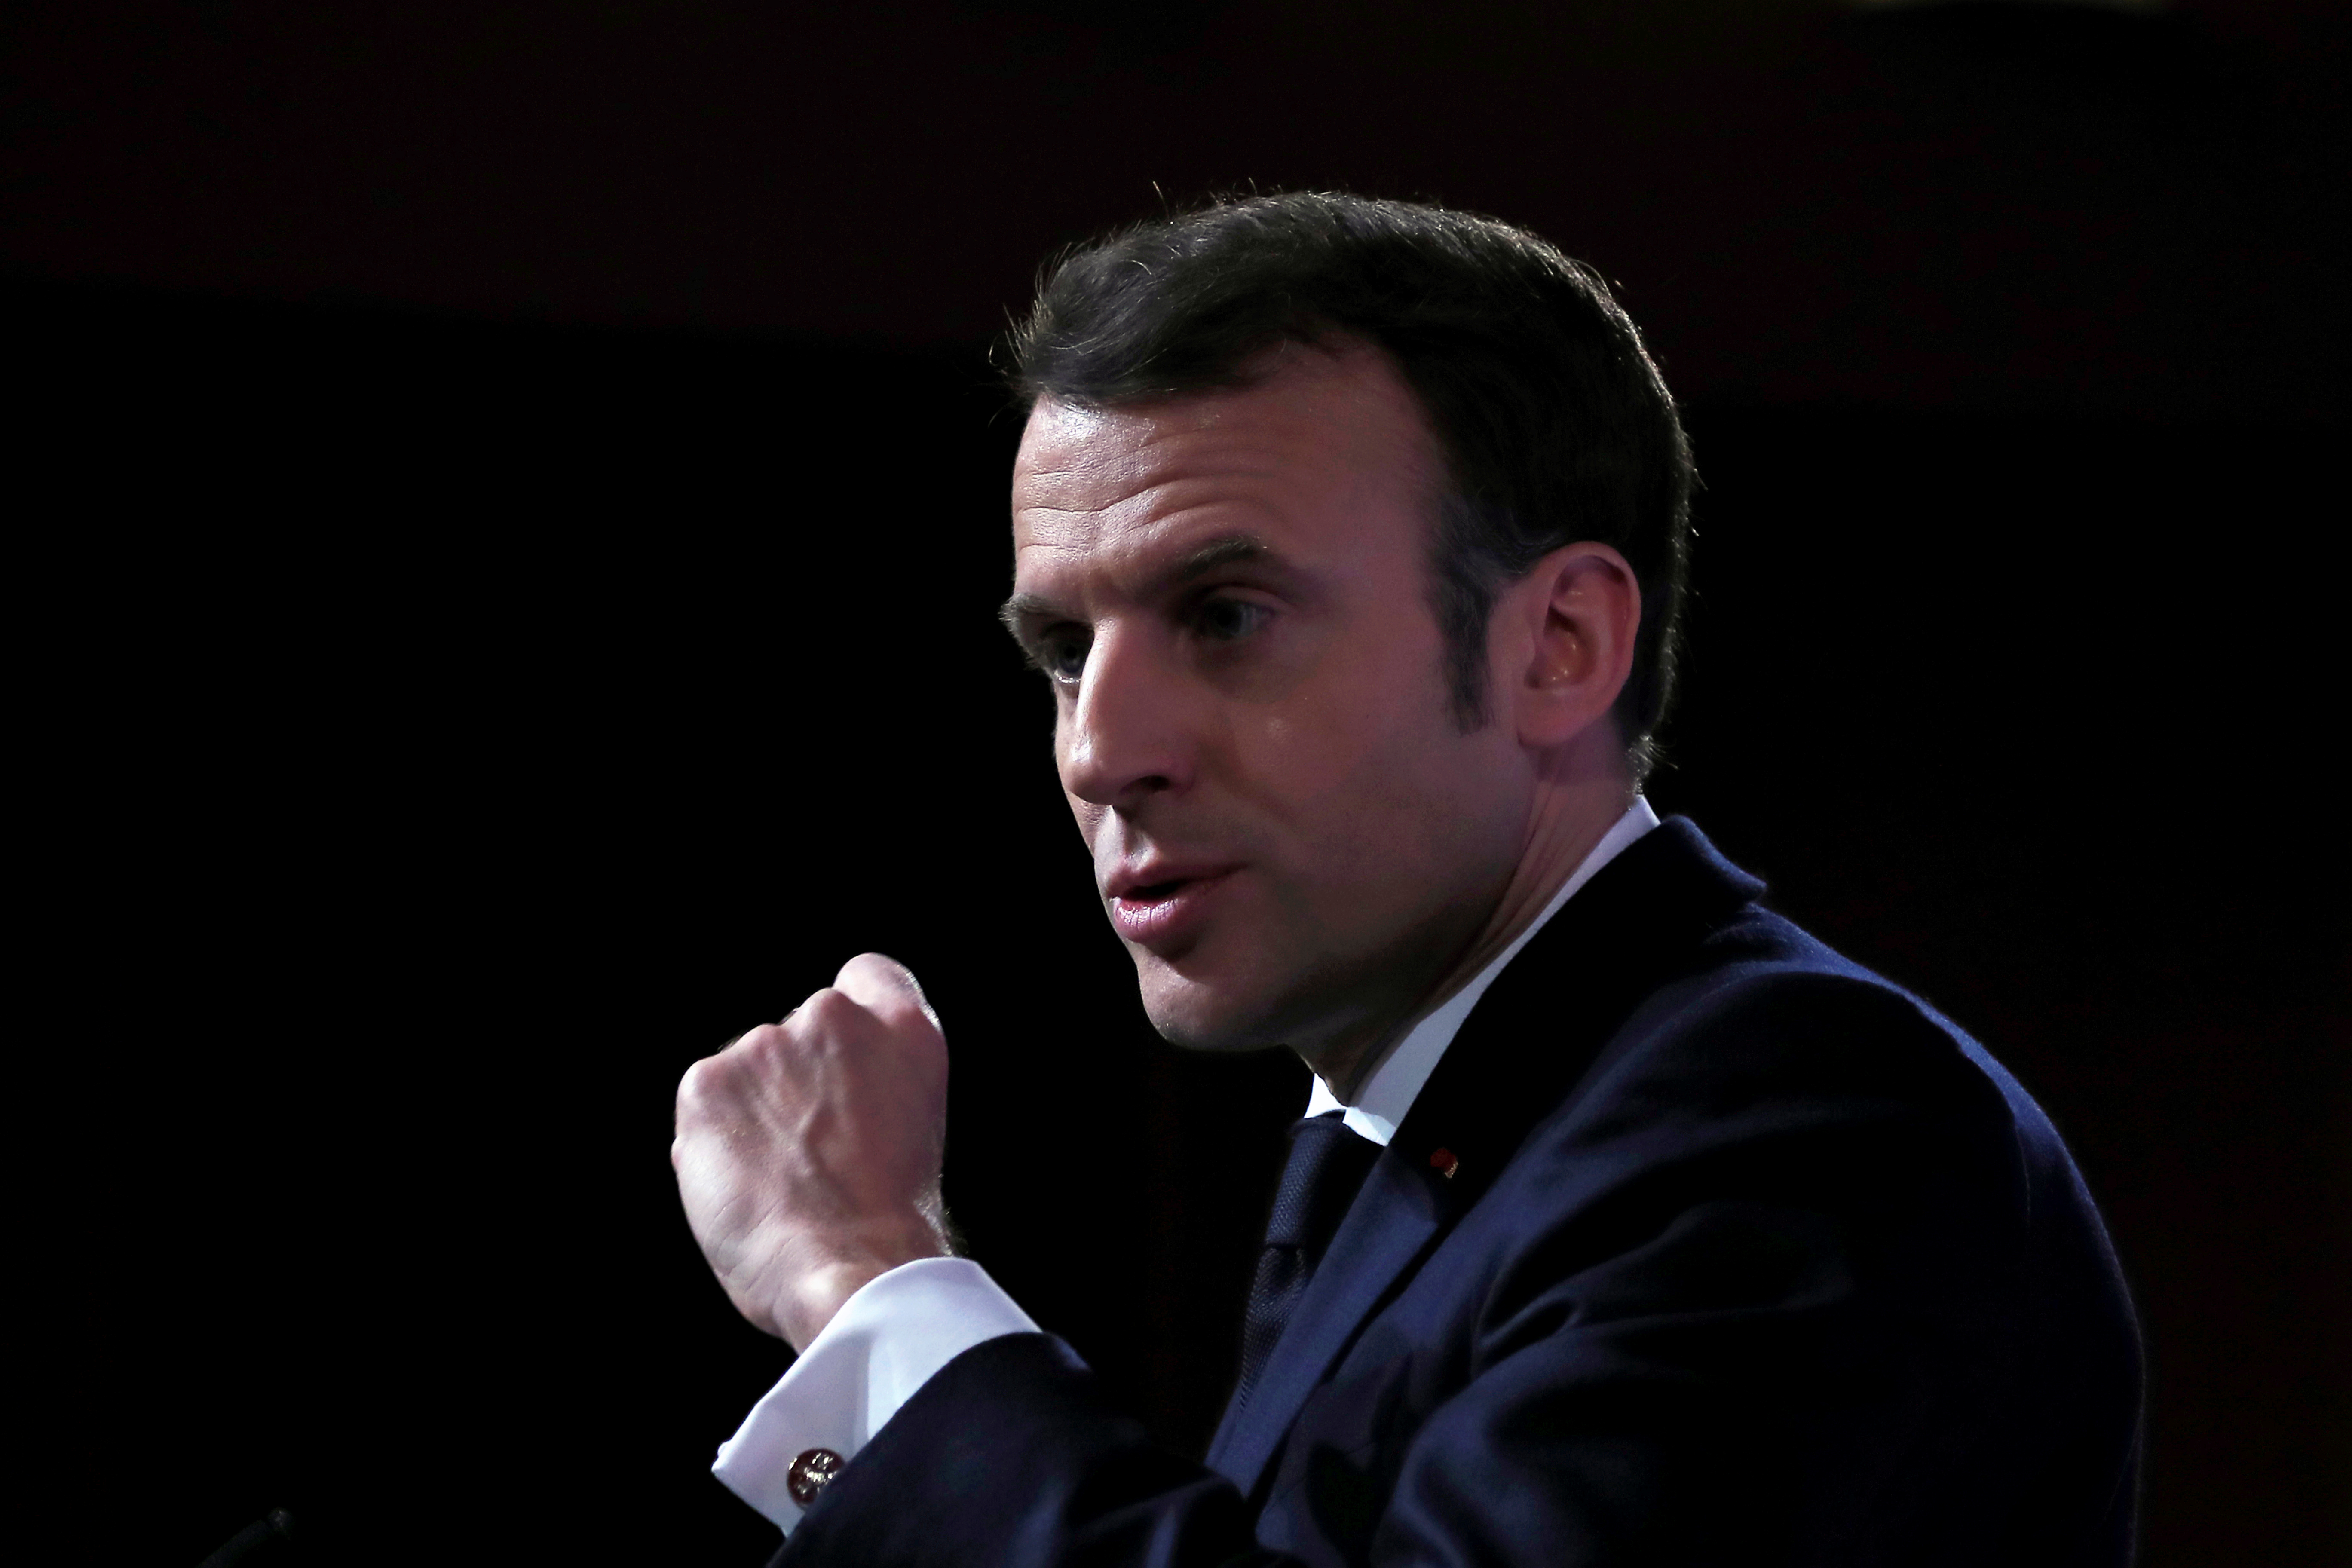 Souveraineté de la France et de l'Europe : ce que veut vraiment Emmanuel Macron